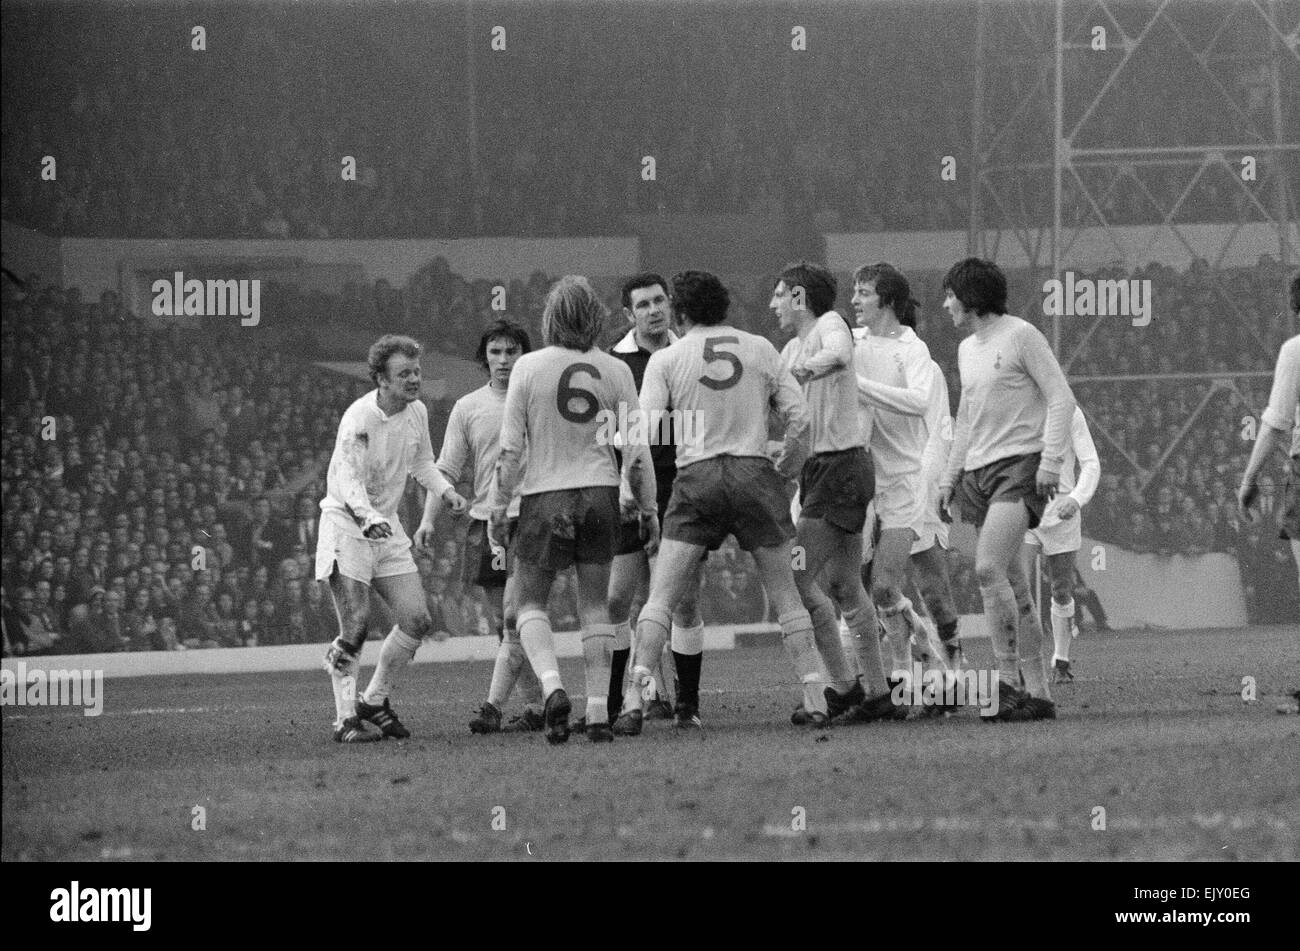 FA Cup Quarter Final match at Elland Road. Leeds United 2 v Tottenham Hotspur 1. 18th March 1972. Stock Photo